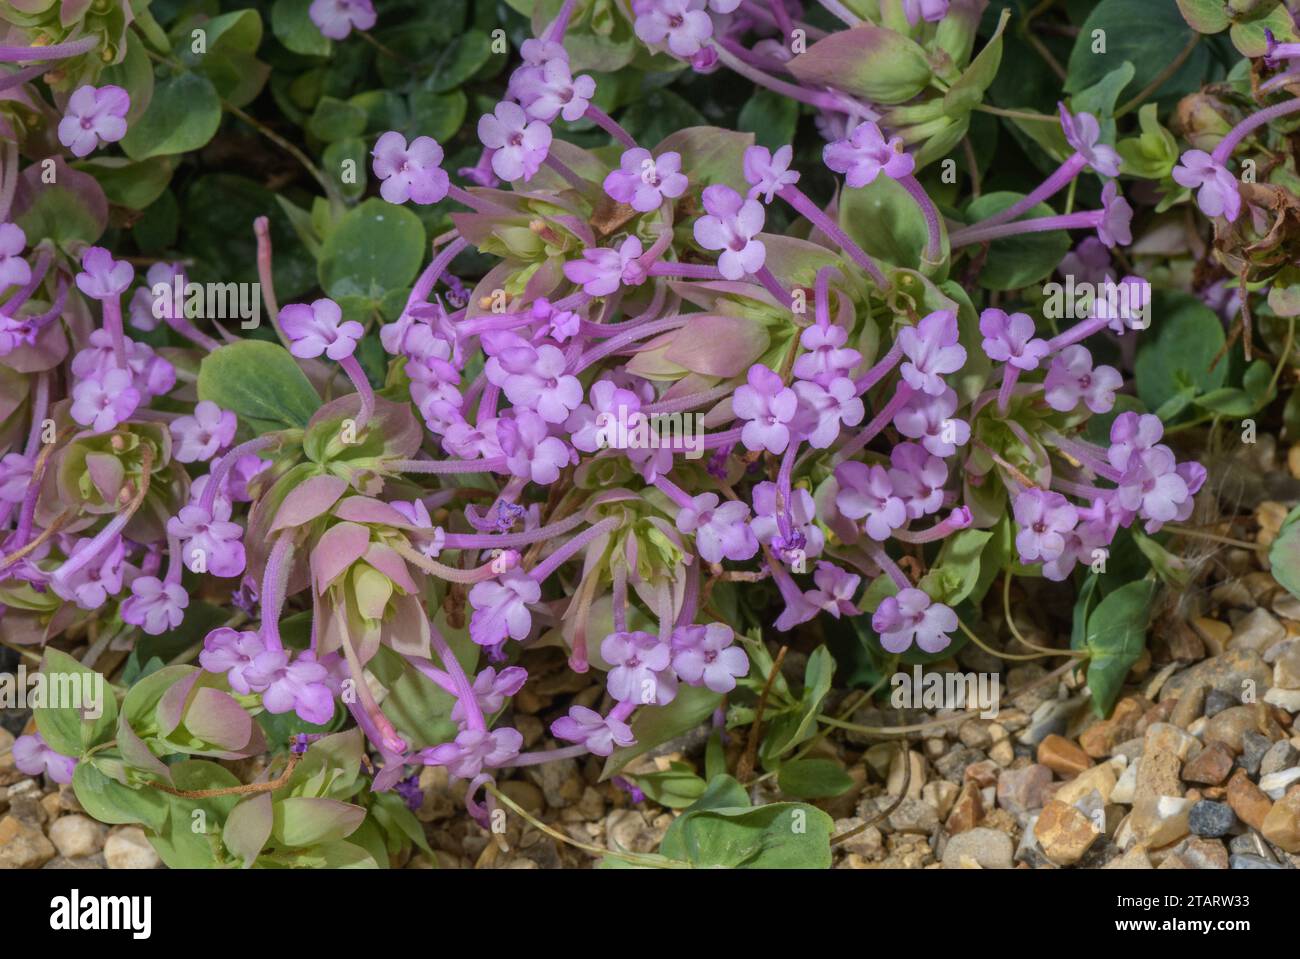 Amanum oregano, Origanum amanum, in flower; from south-east Turkey. Stock Photo